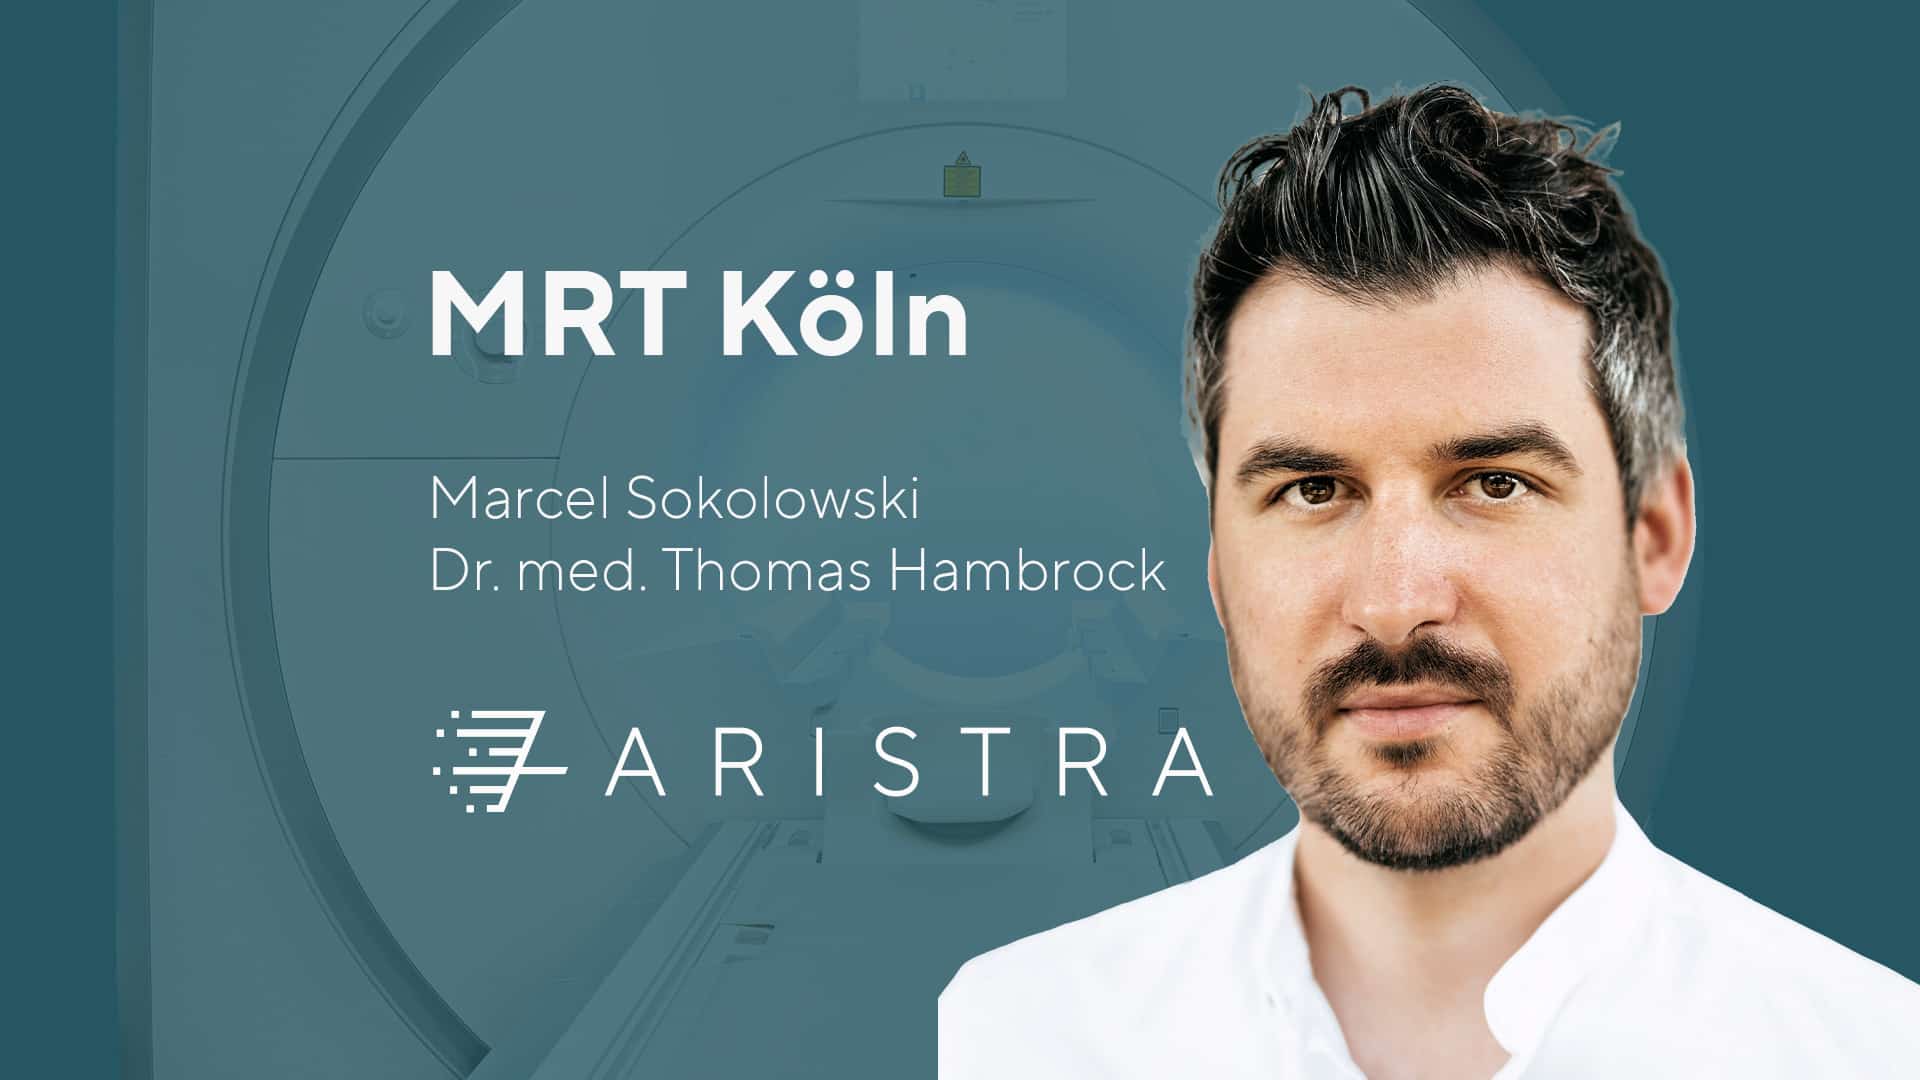 ARISTRA MRT Köln, Radiologe Marcel Sokolowski